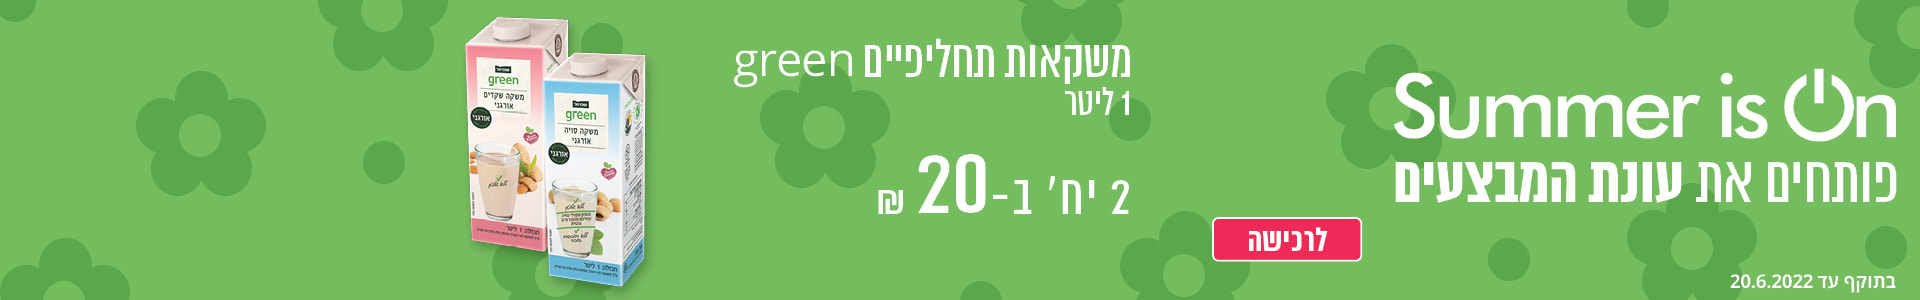 משקאות תחליפיים green ליטר 2 יח' ב- 20 ₪ בתוקף עד 20.6.2022